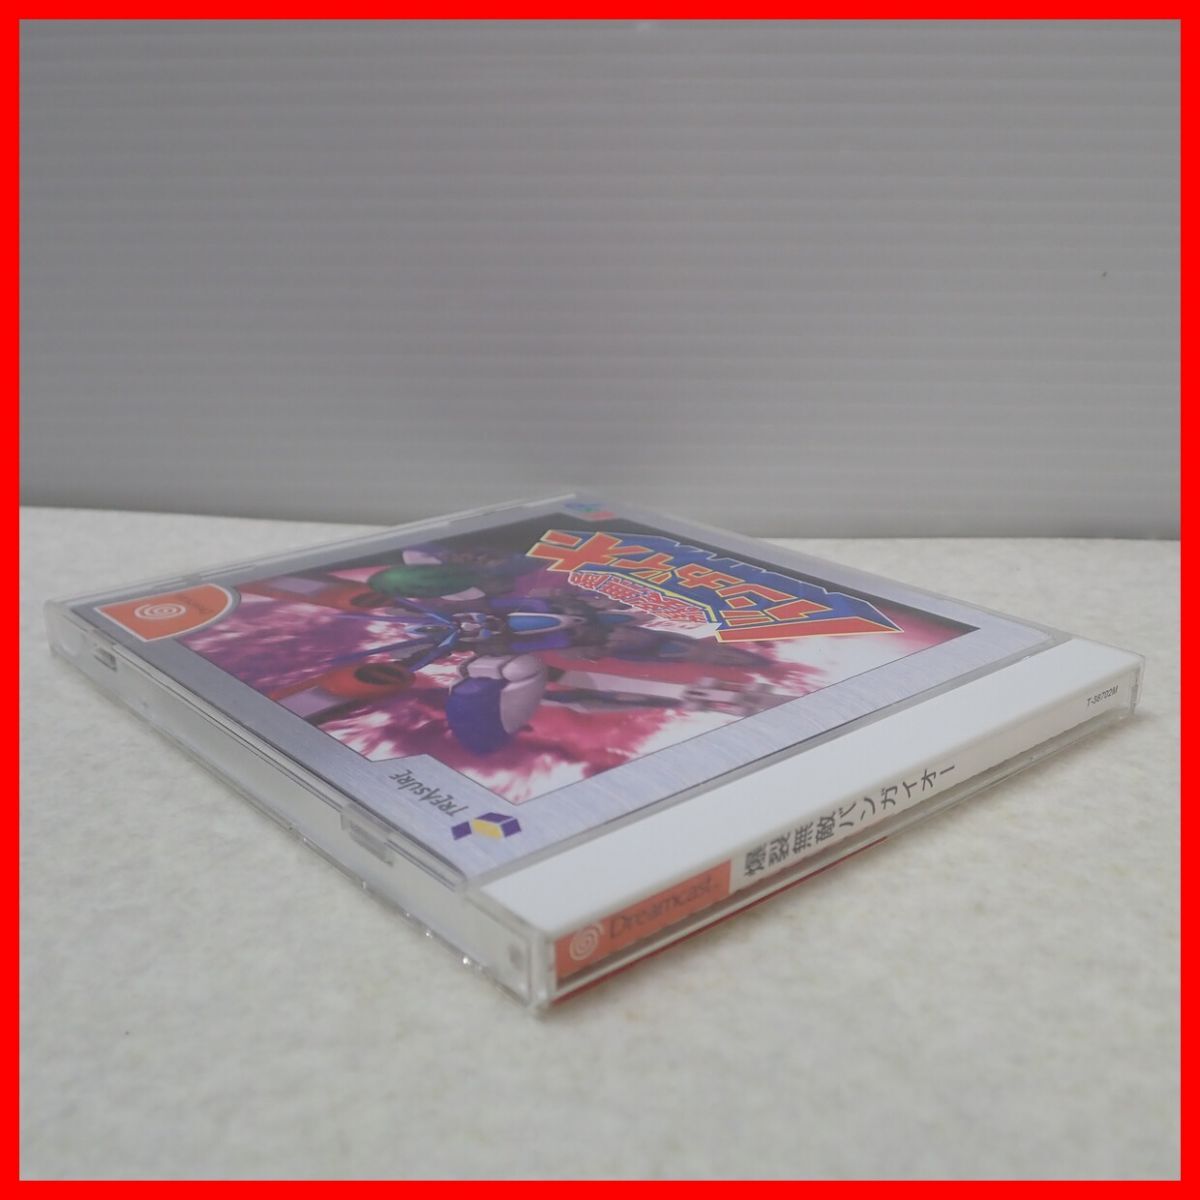 Φ operation guarantee goods DC Dreamcast .. less . van ga Io -TRESUREto leisure box opinion obi post card attaching [PP